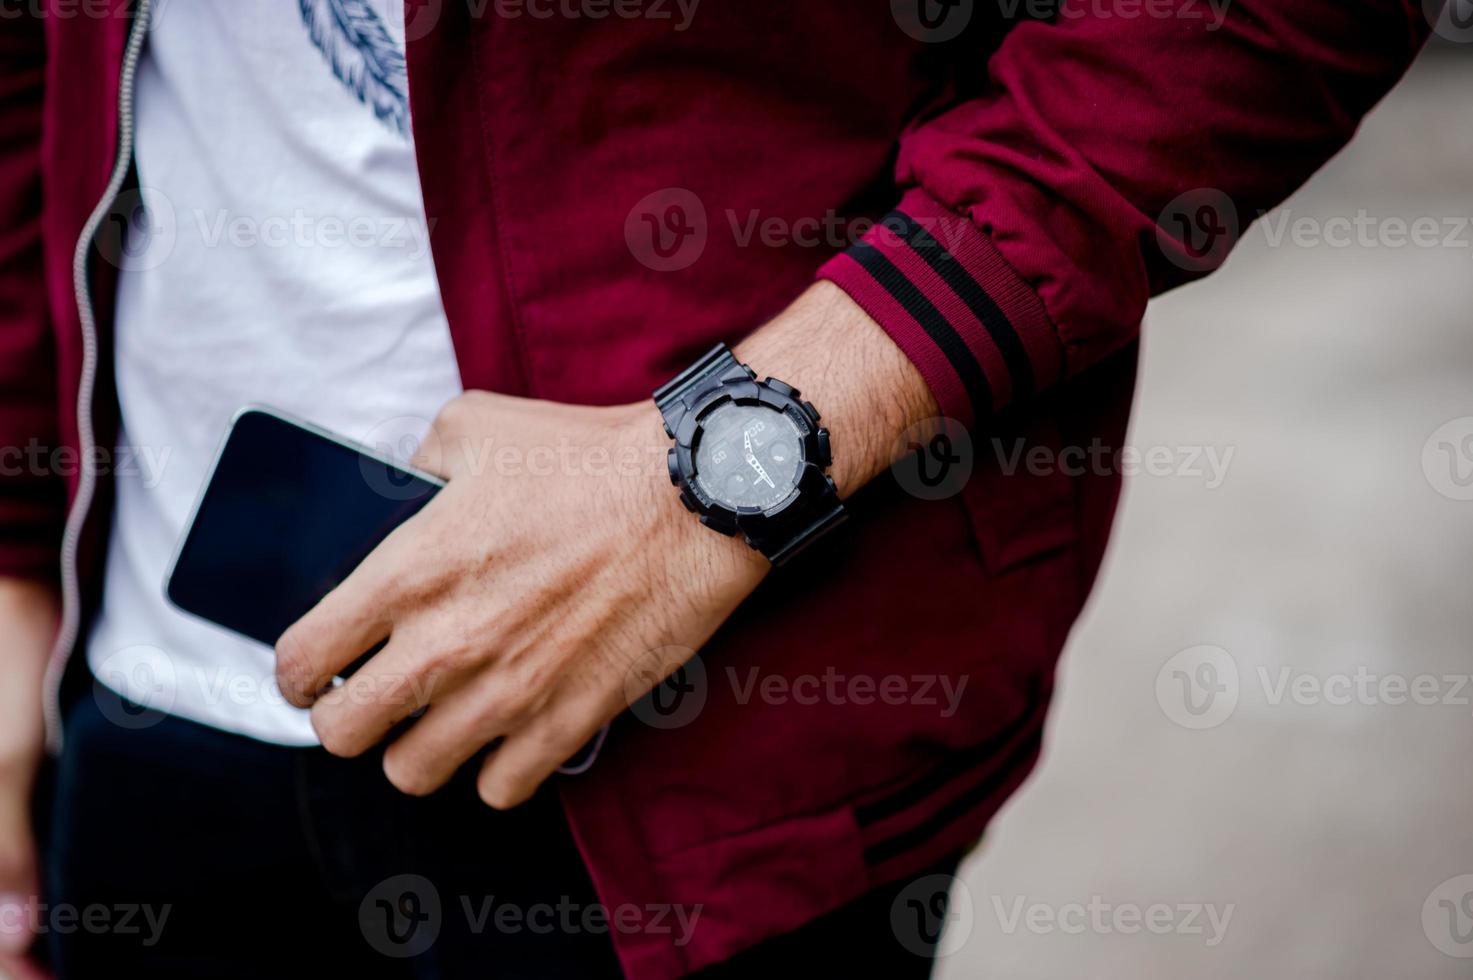 manos y relojes de caballeros como llevar un reloj de pulsera y puntualidad foto